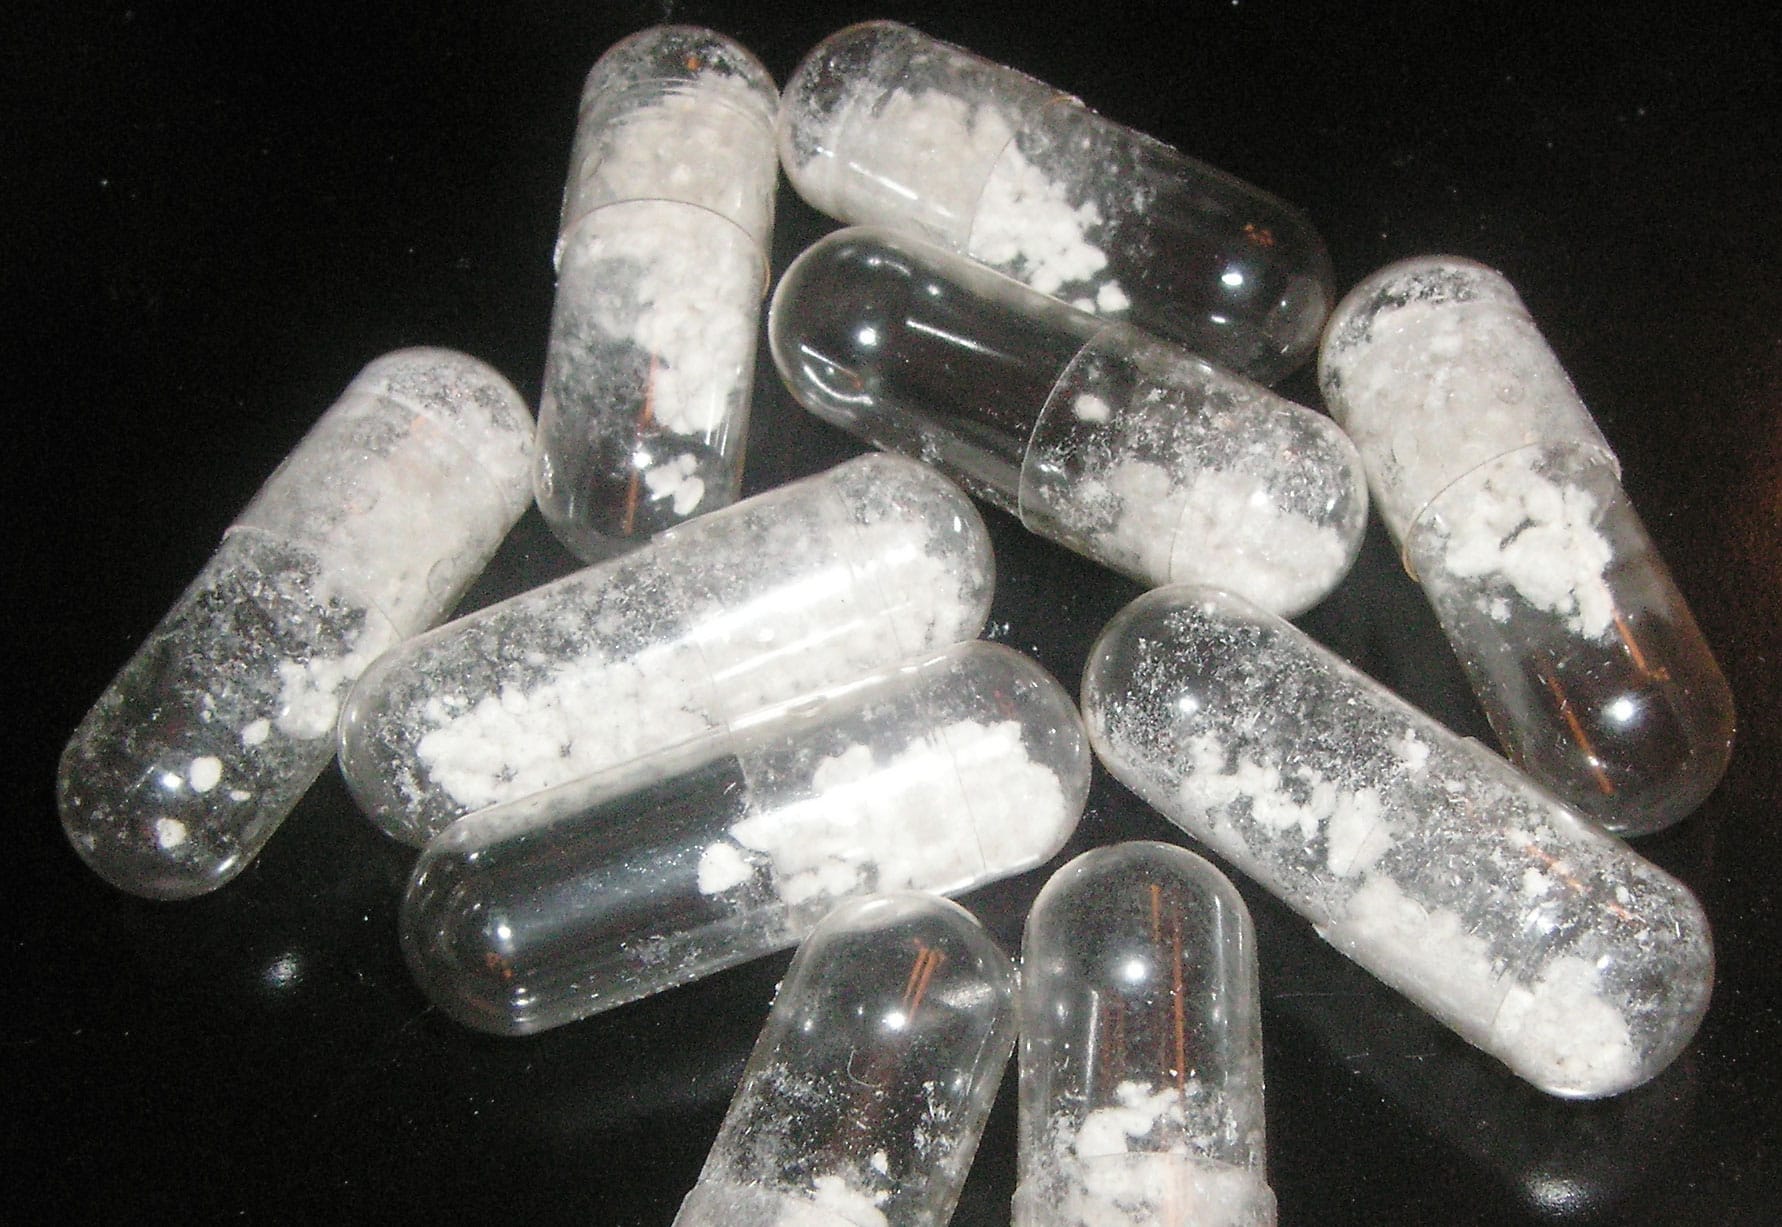 Ethylphenethylamine